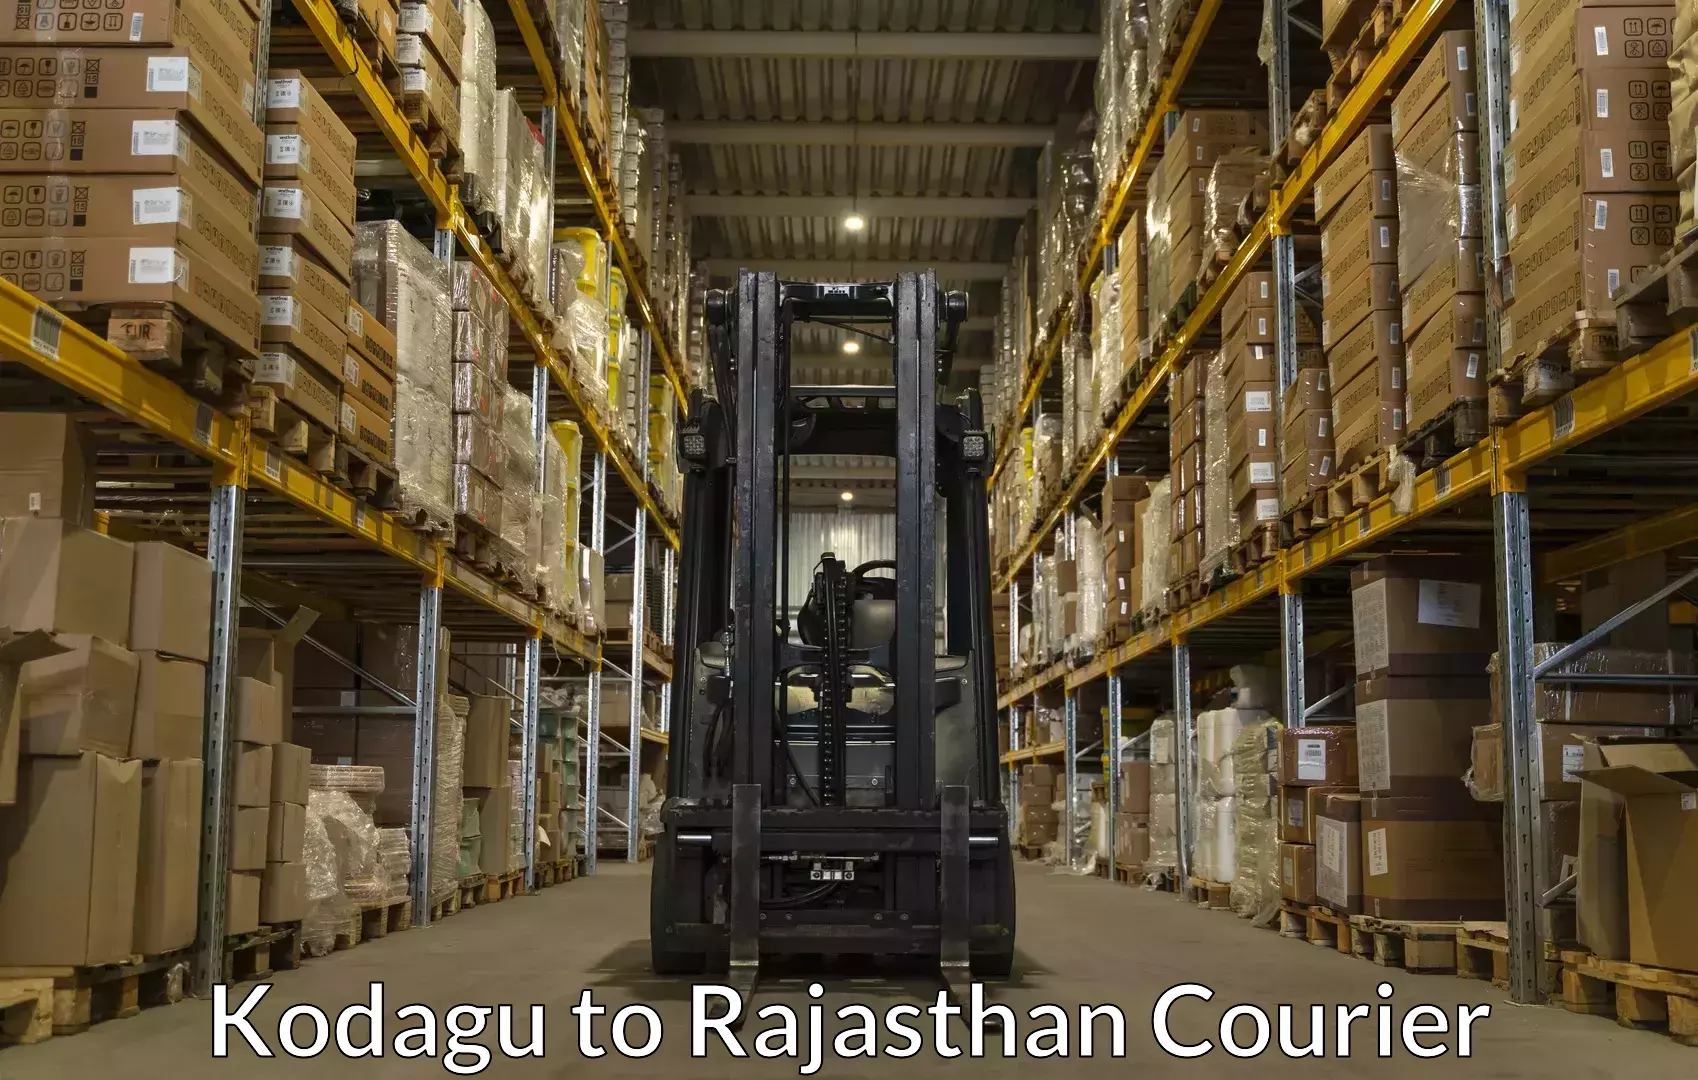 Baggage transport network Kodagu to Jodhpur